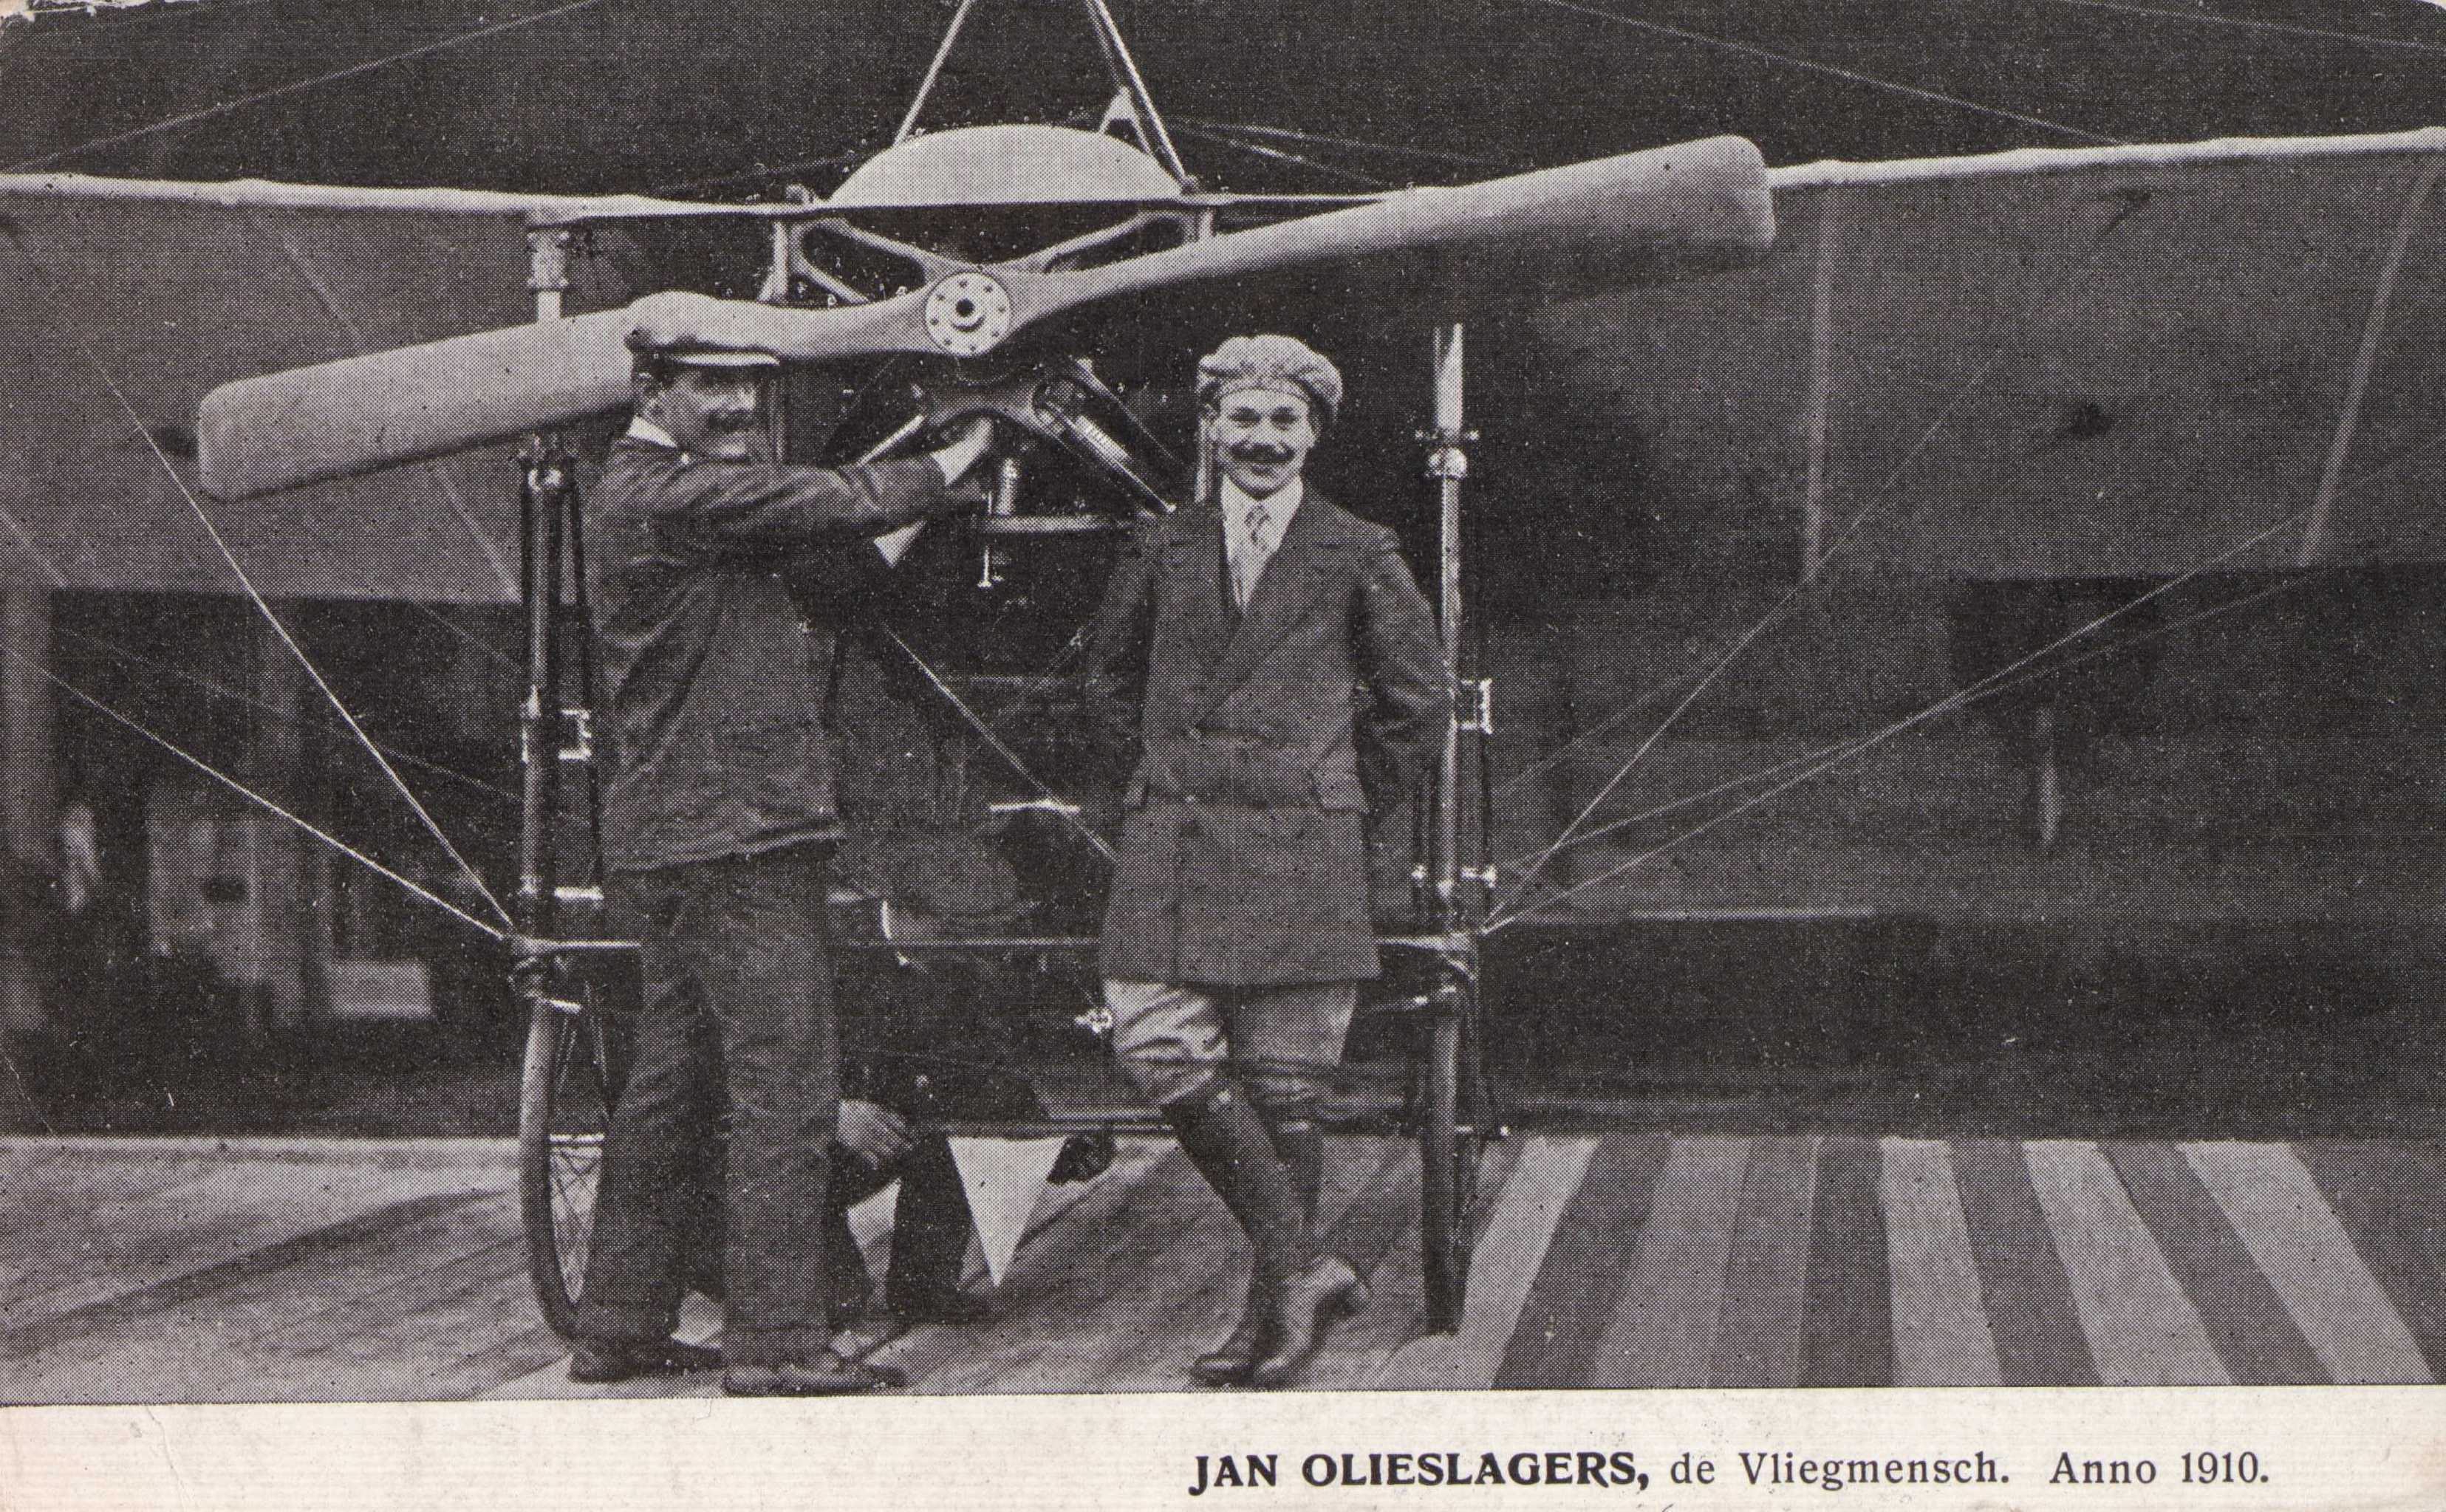 Jan-Olieslagers-1910-64a4b8ac.jpg